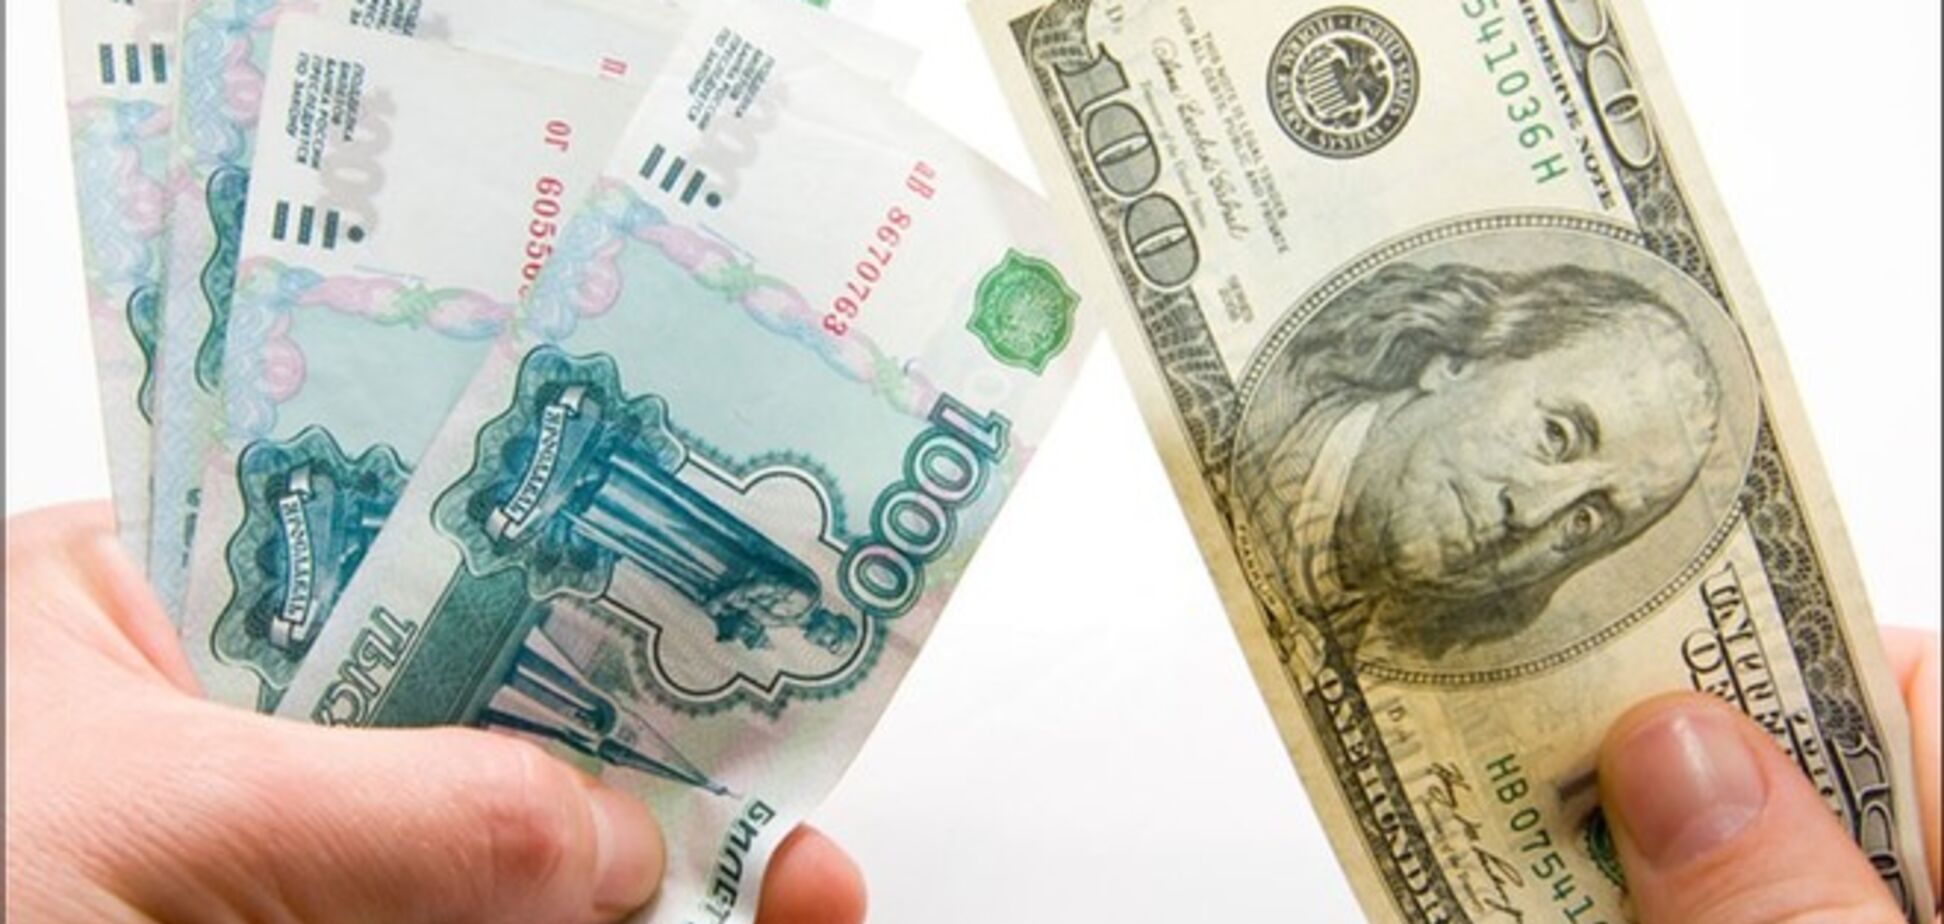 Немцов рассказал, когда доллар в России будет стоить 90 рублей